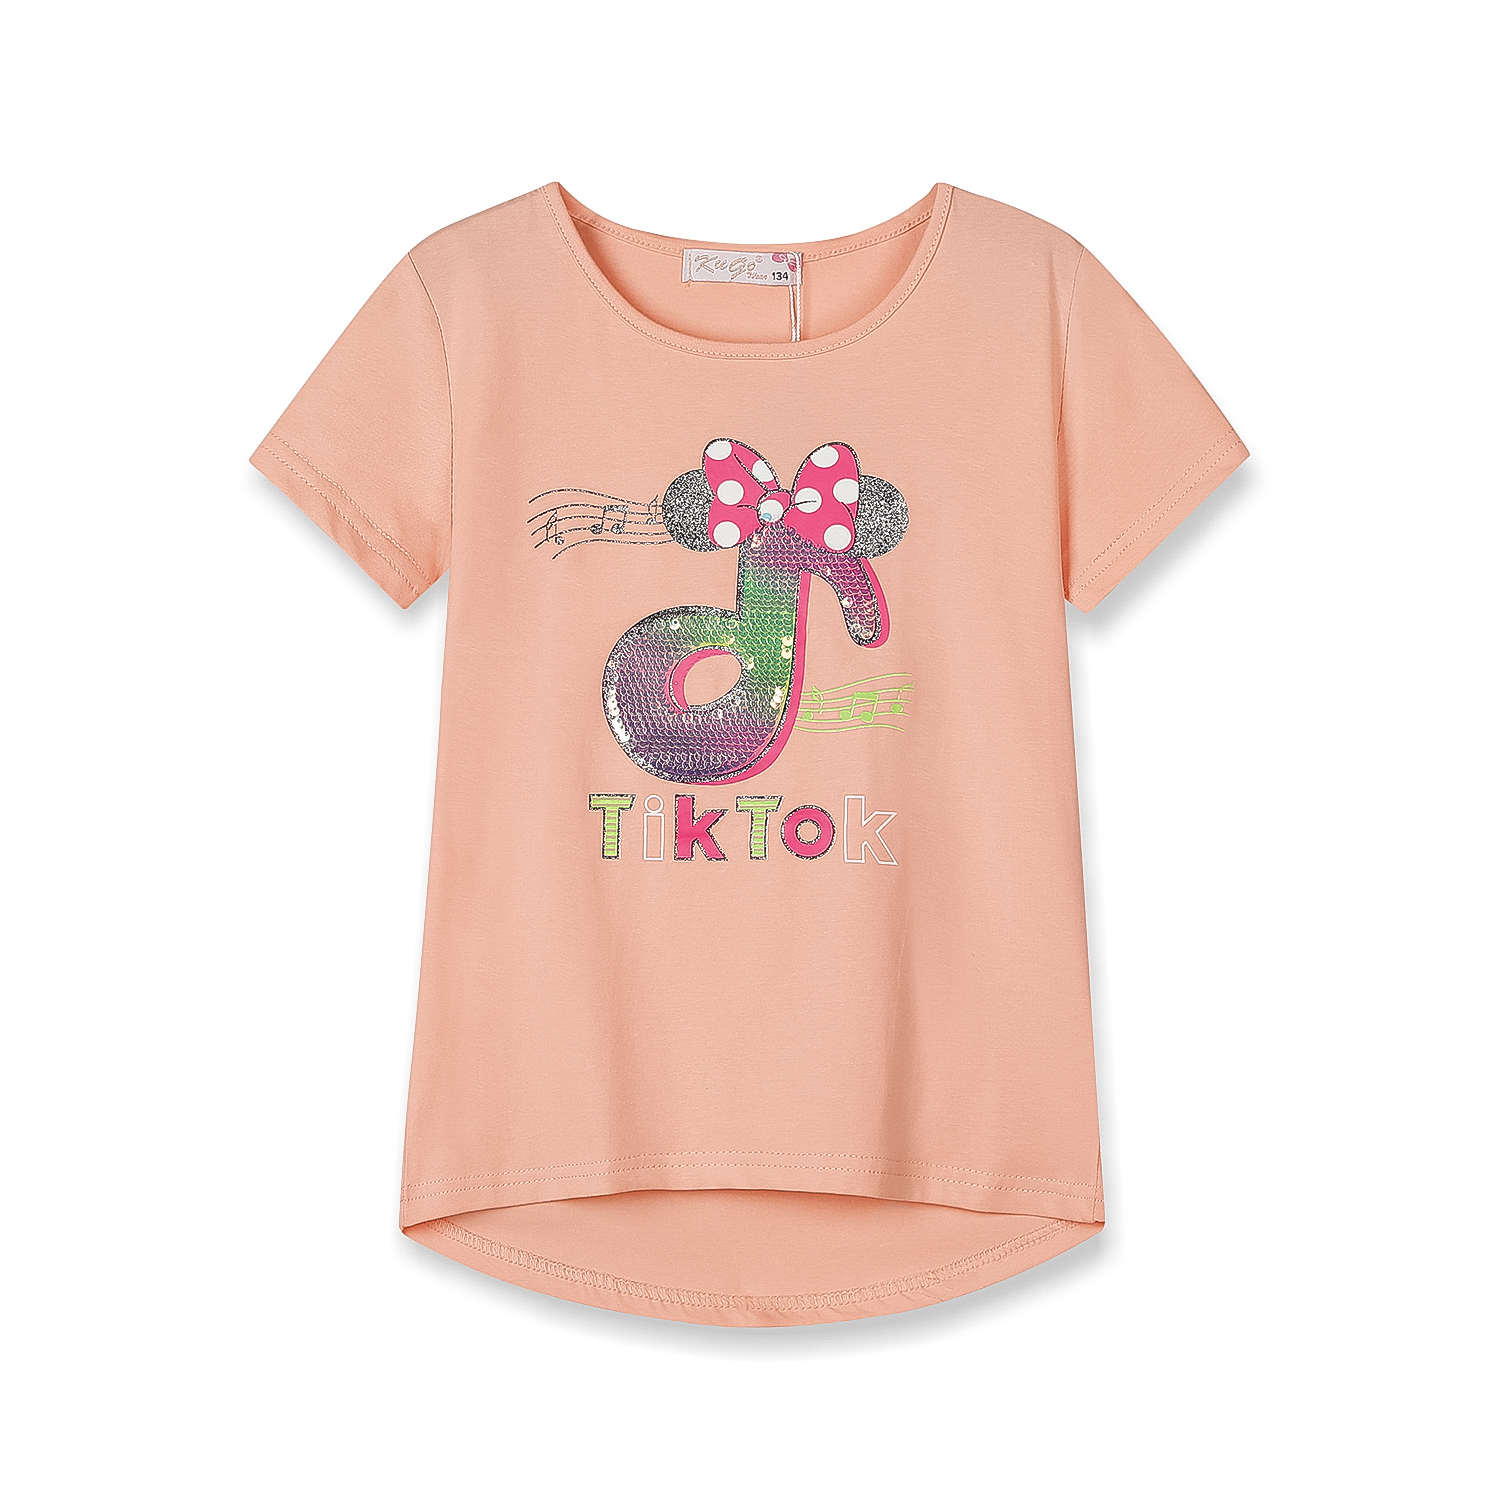 Dívčí triko s flitry - KUGO WK0803, lososová Barva: Lososová, Velikost: 116